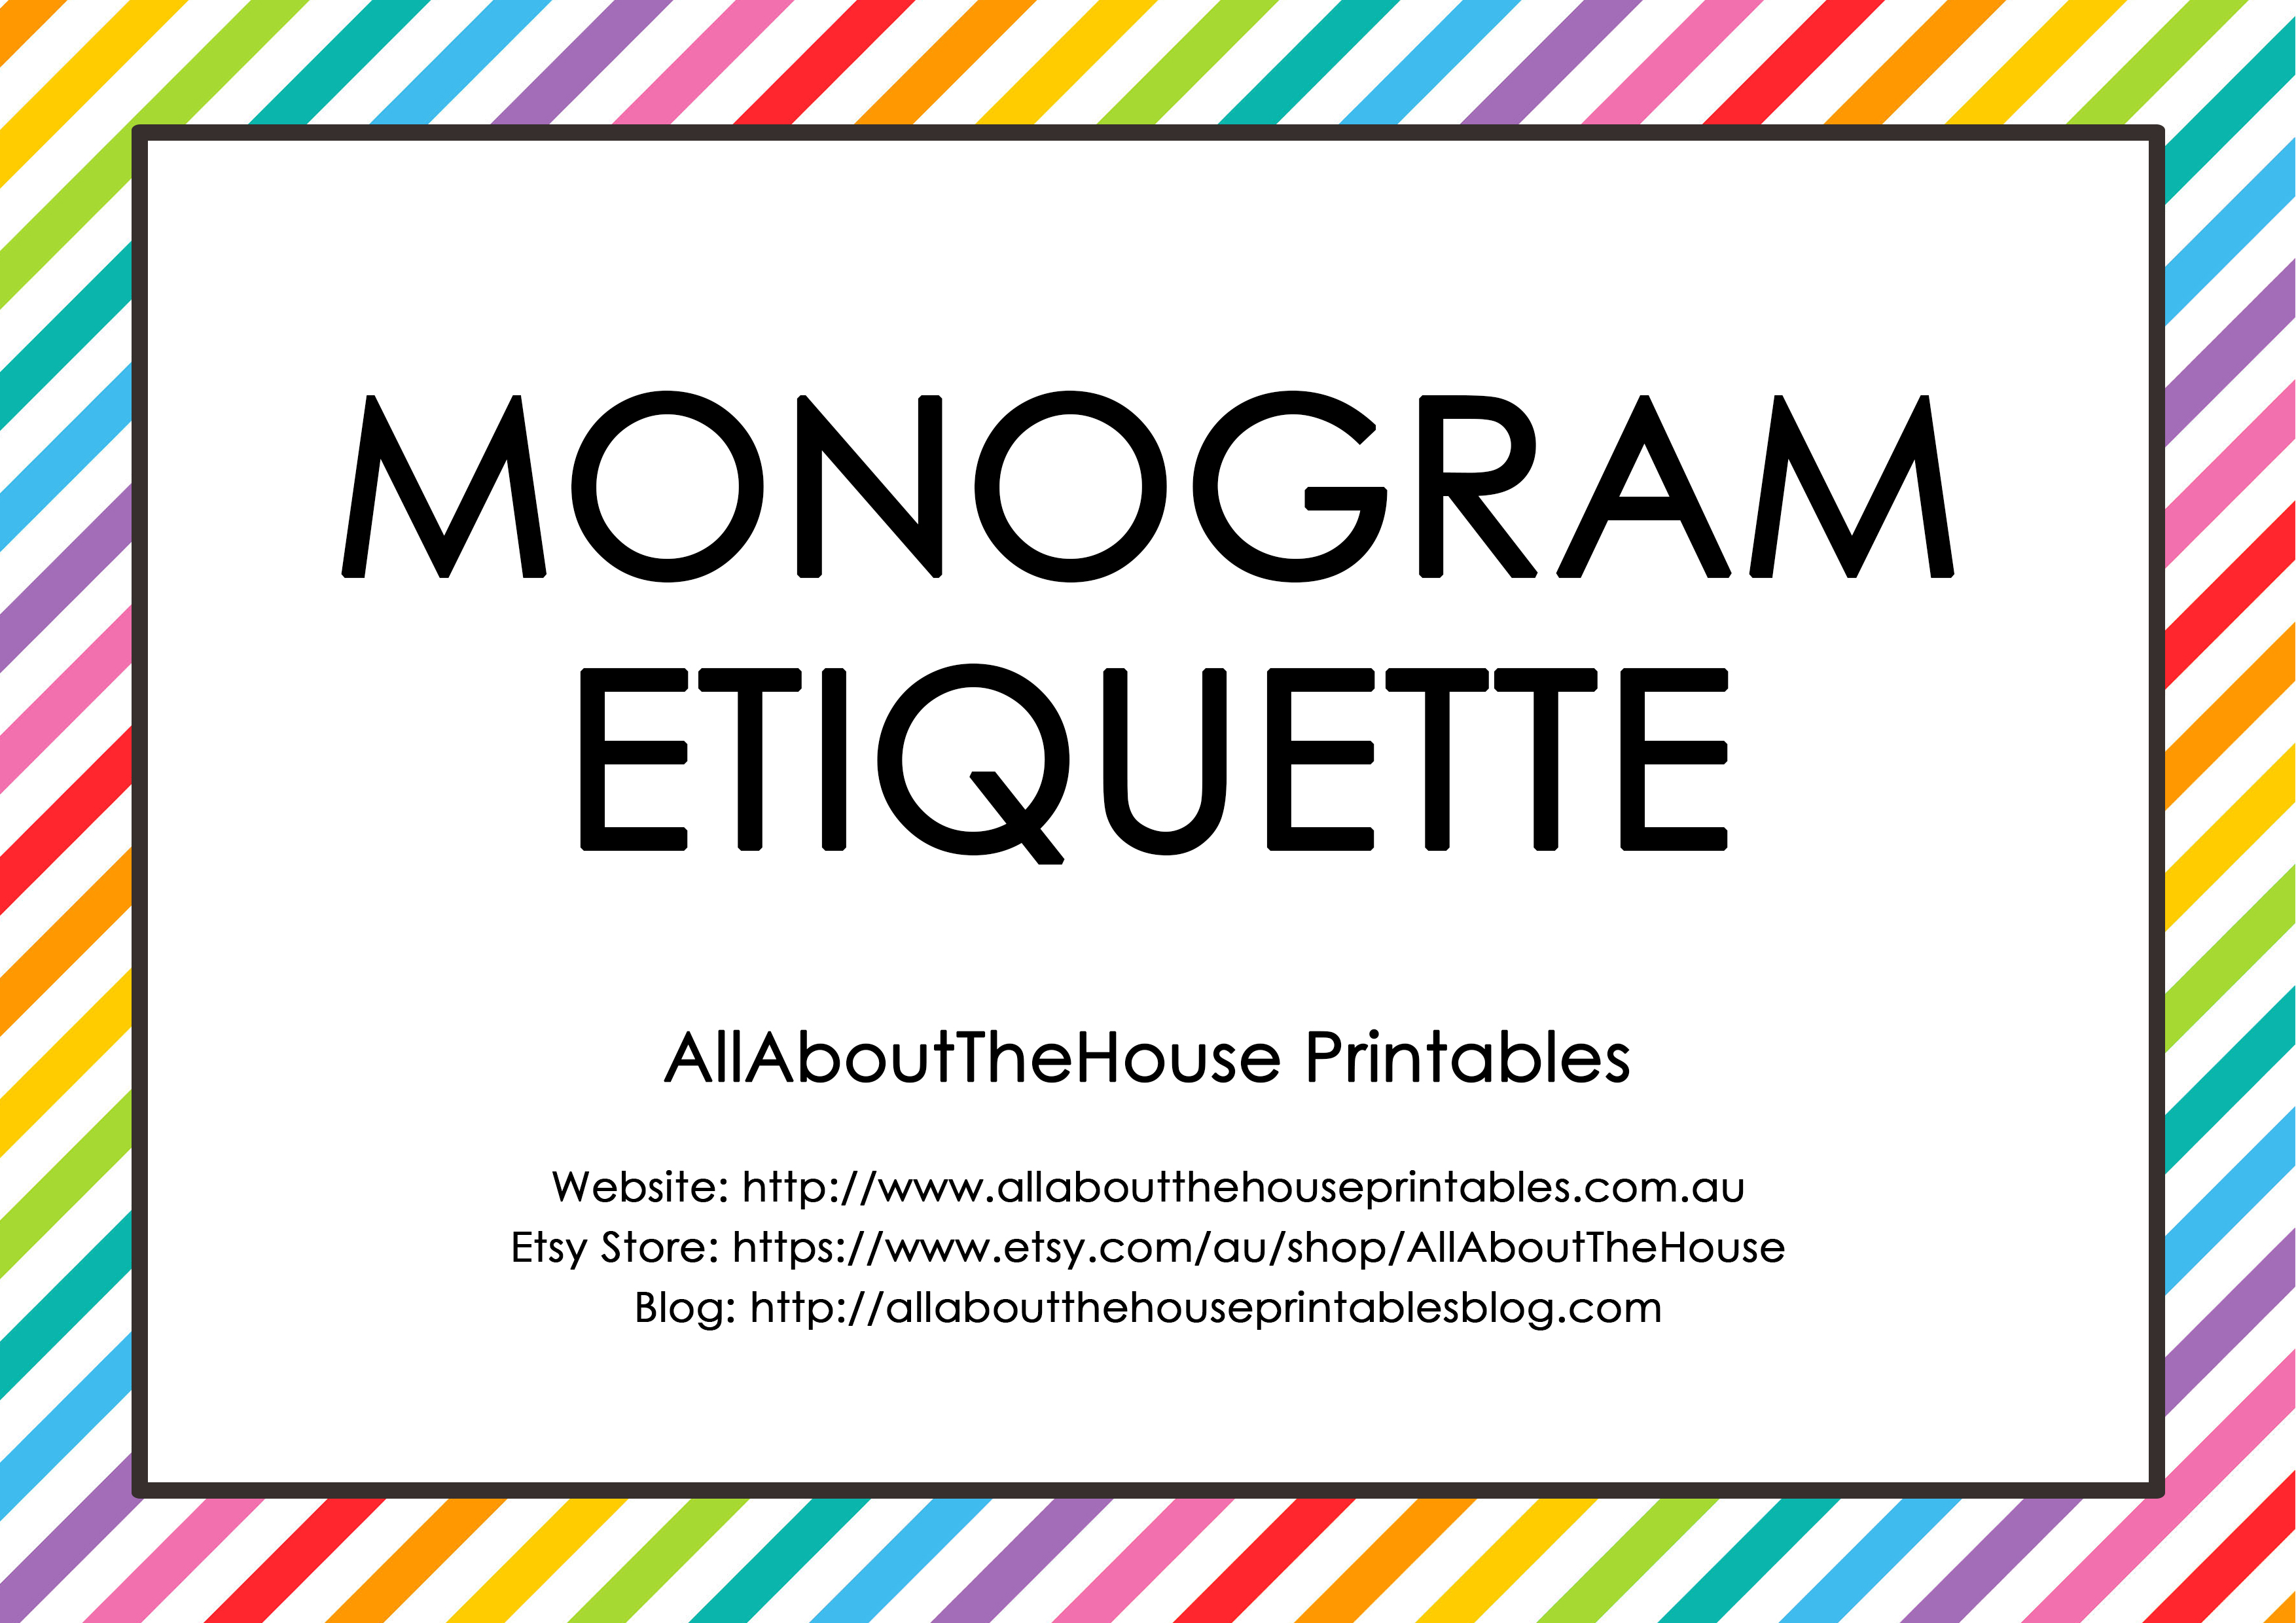 Monogram Etiquette